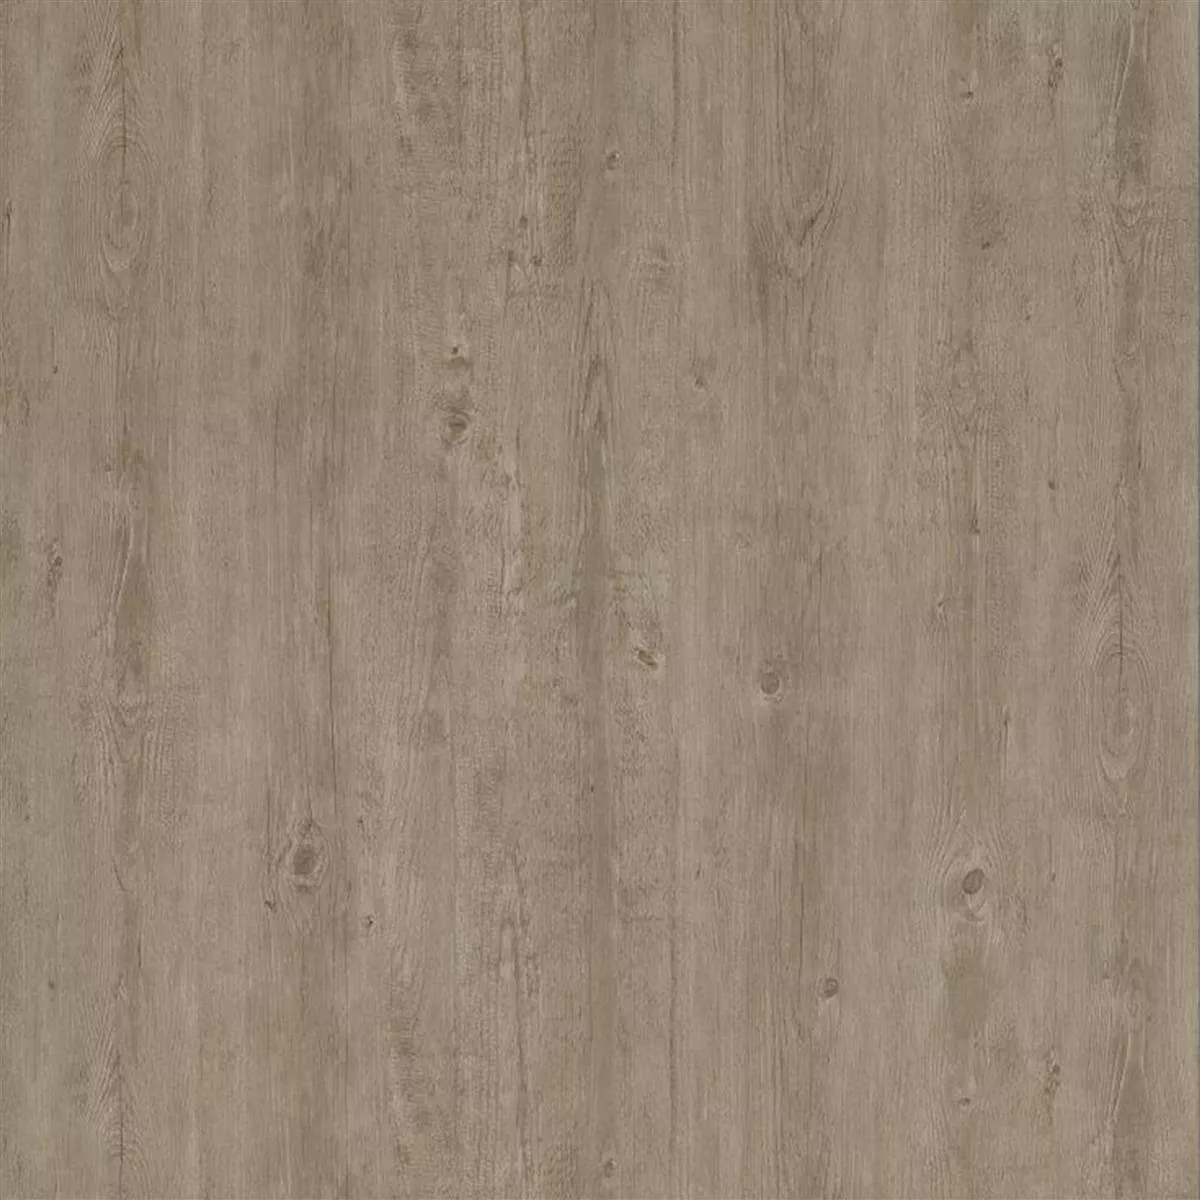 Piso De Vinil Sistema De Clique Elderwood Bege Cinza 17,2x121cm